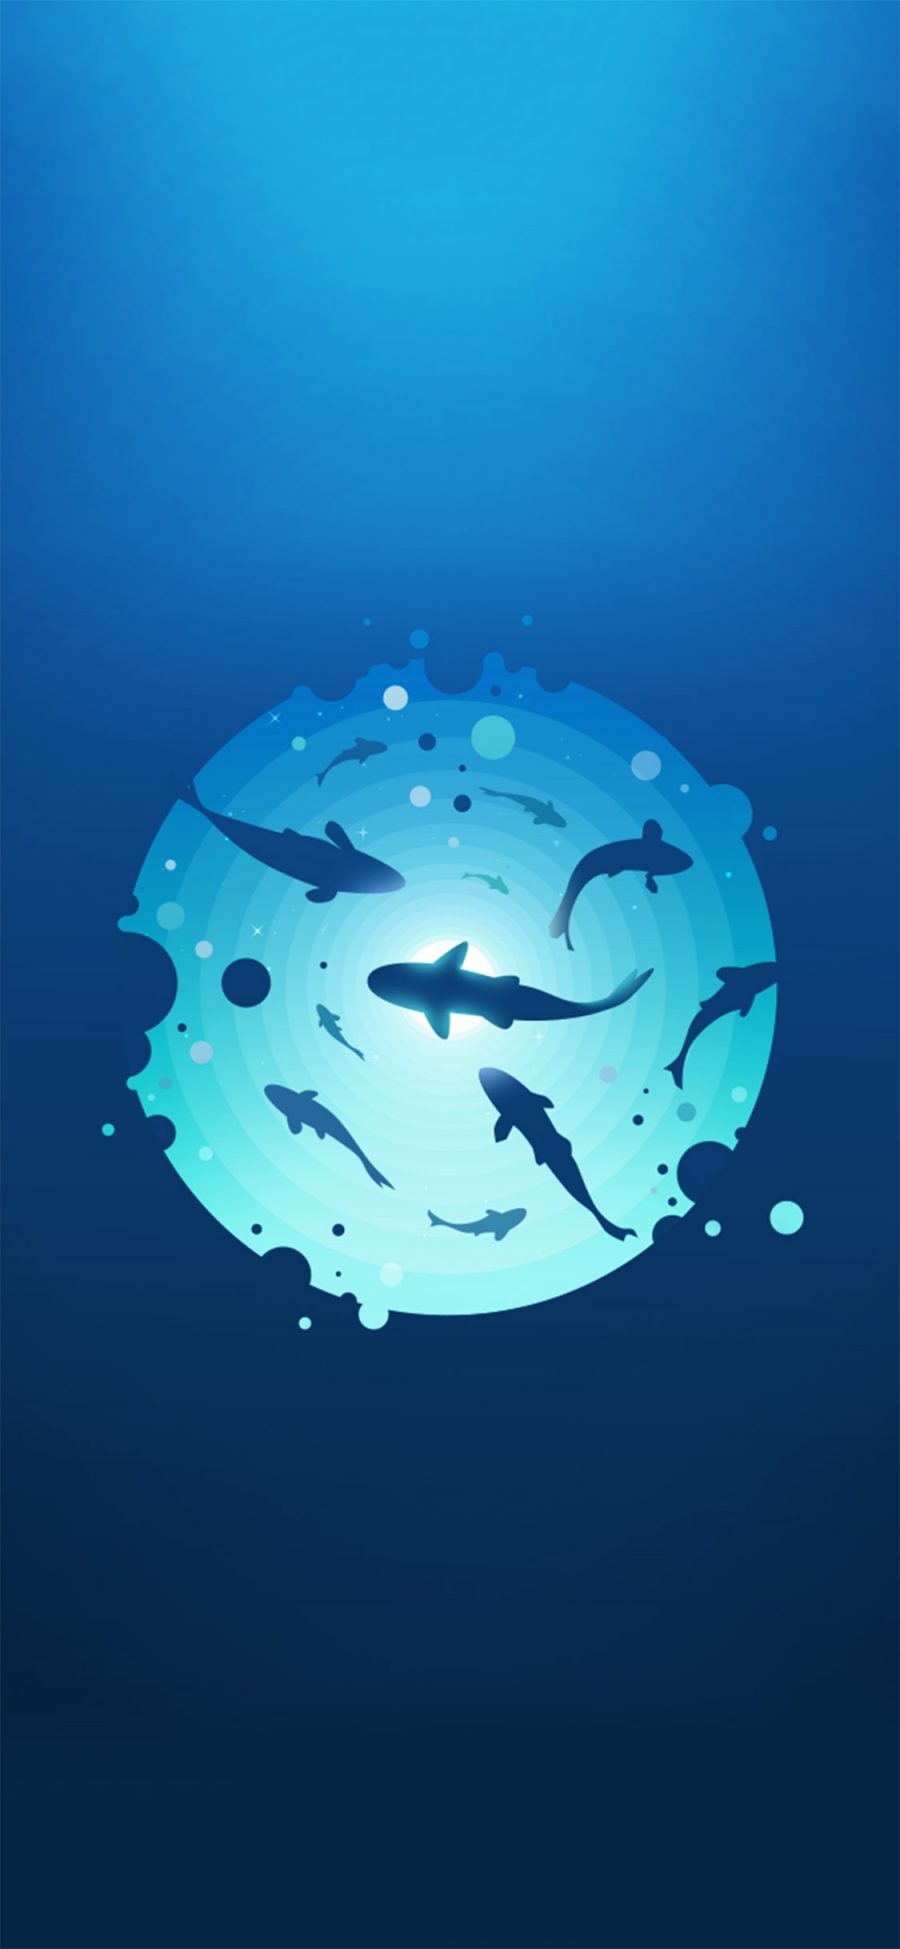 [2436×1125]鲨鱼 创意 海底 蔚蓝 苹果手机动漫壁纸图片